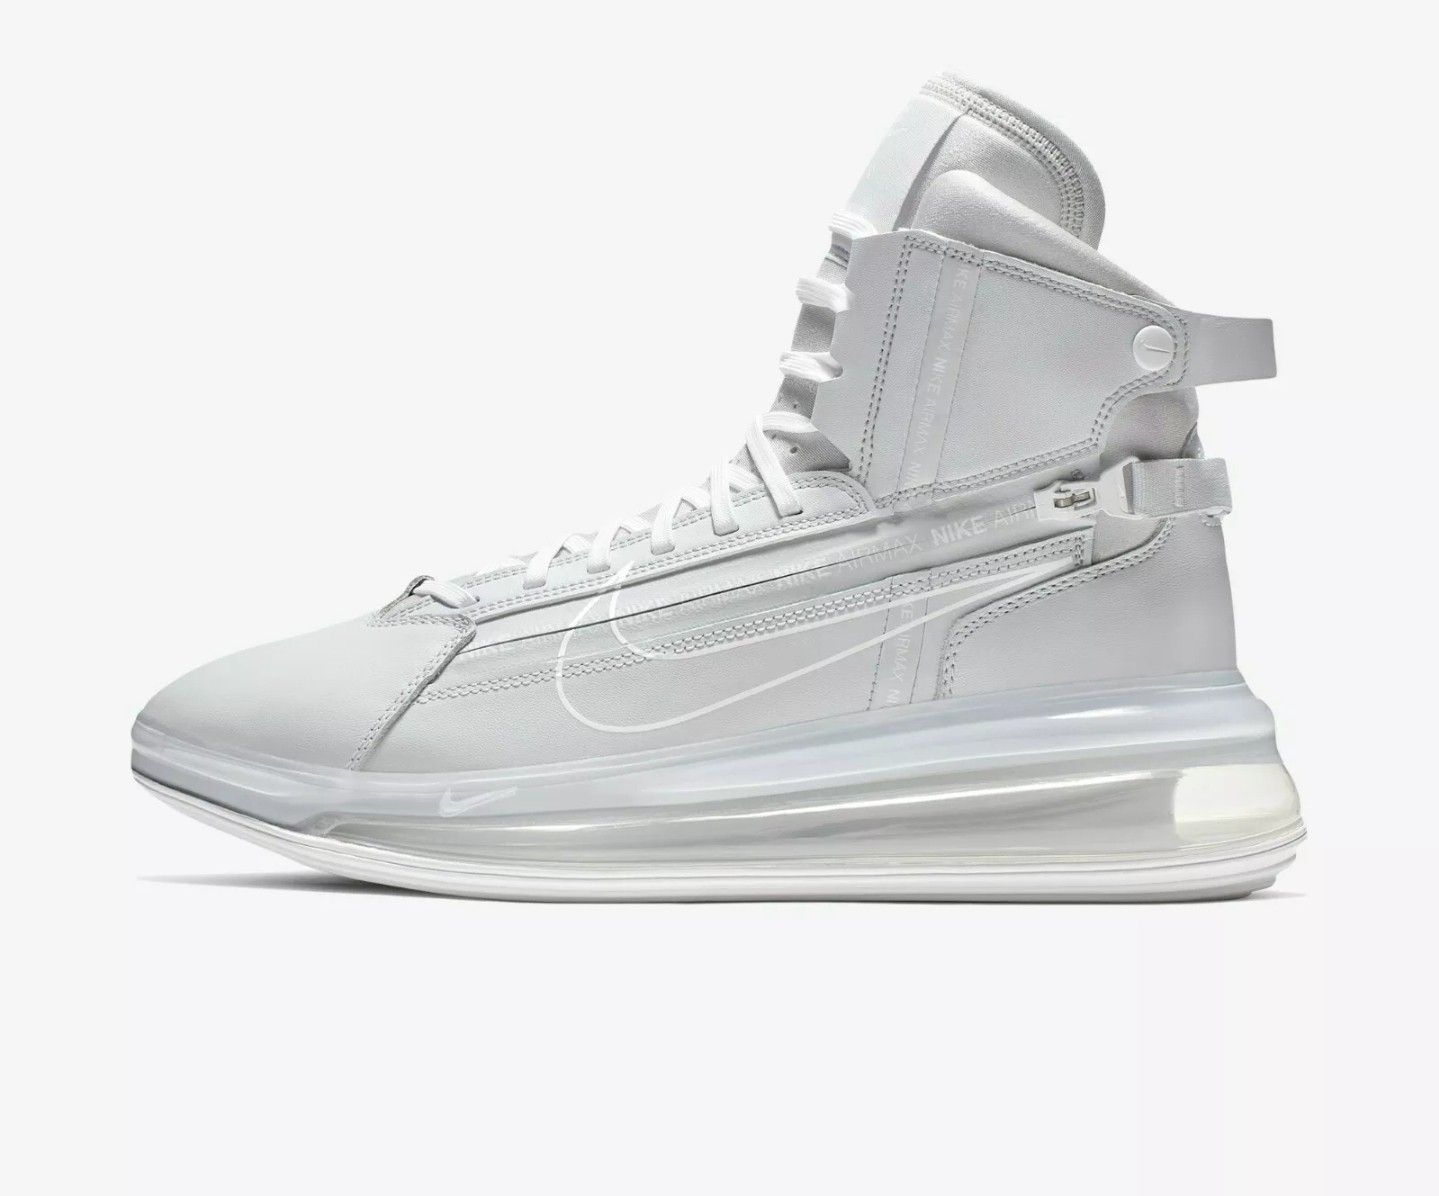 Nike Men's Air Max 720 SATRN Athletic Shoes Sneakers - Pure Platinum(AO2110-003)